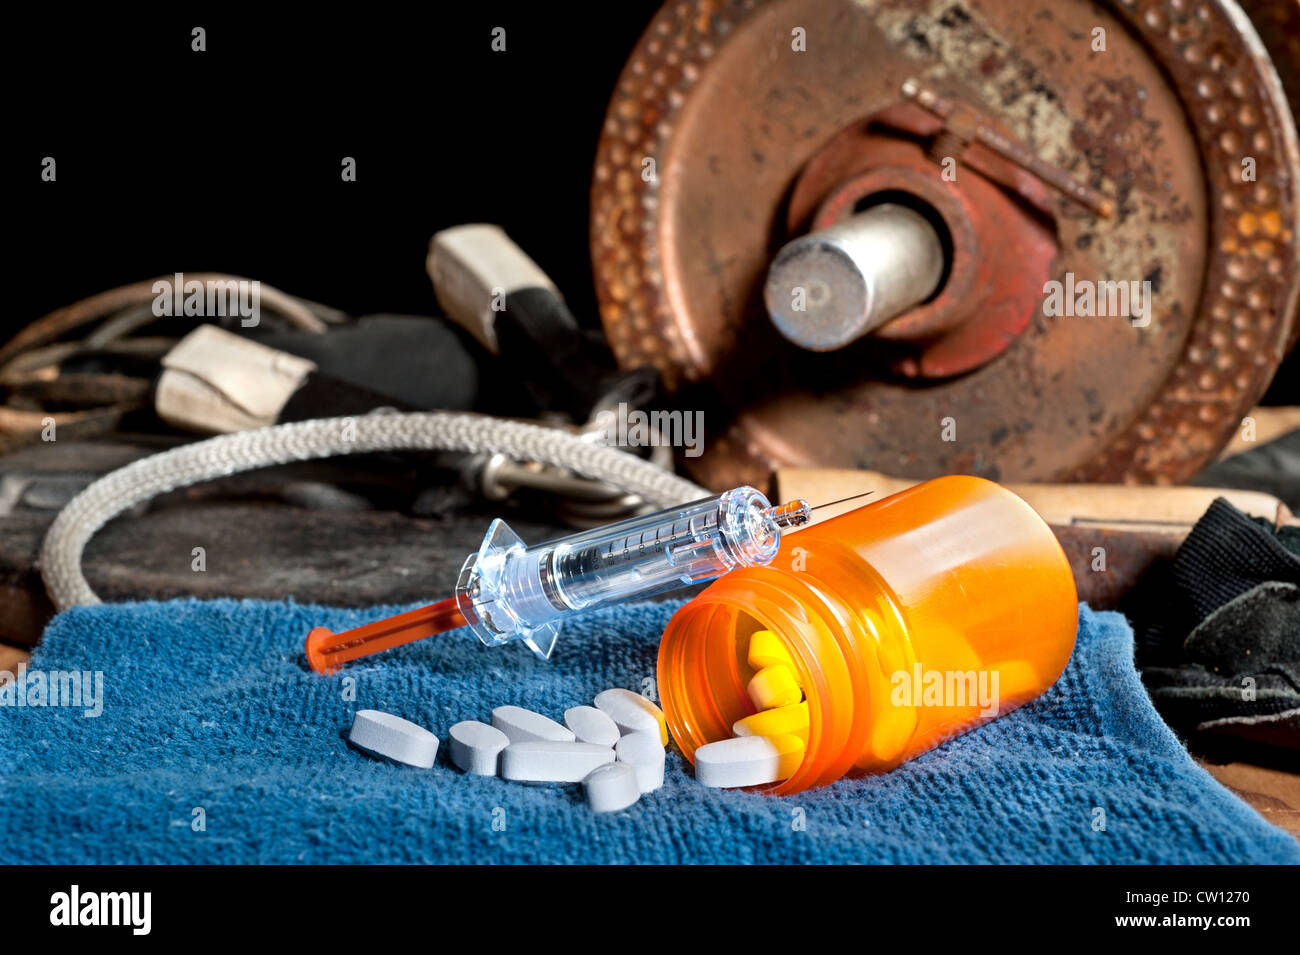 Farmaci steroidei compresi pillole e una siringa nella parte anteriore dell'attrezzatura ginnica. Foto Stock